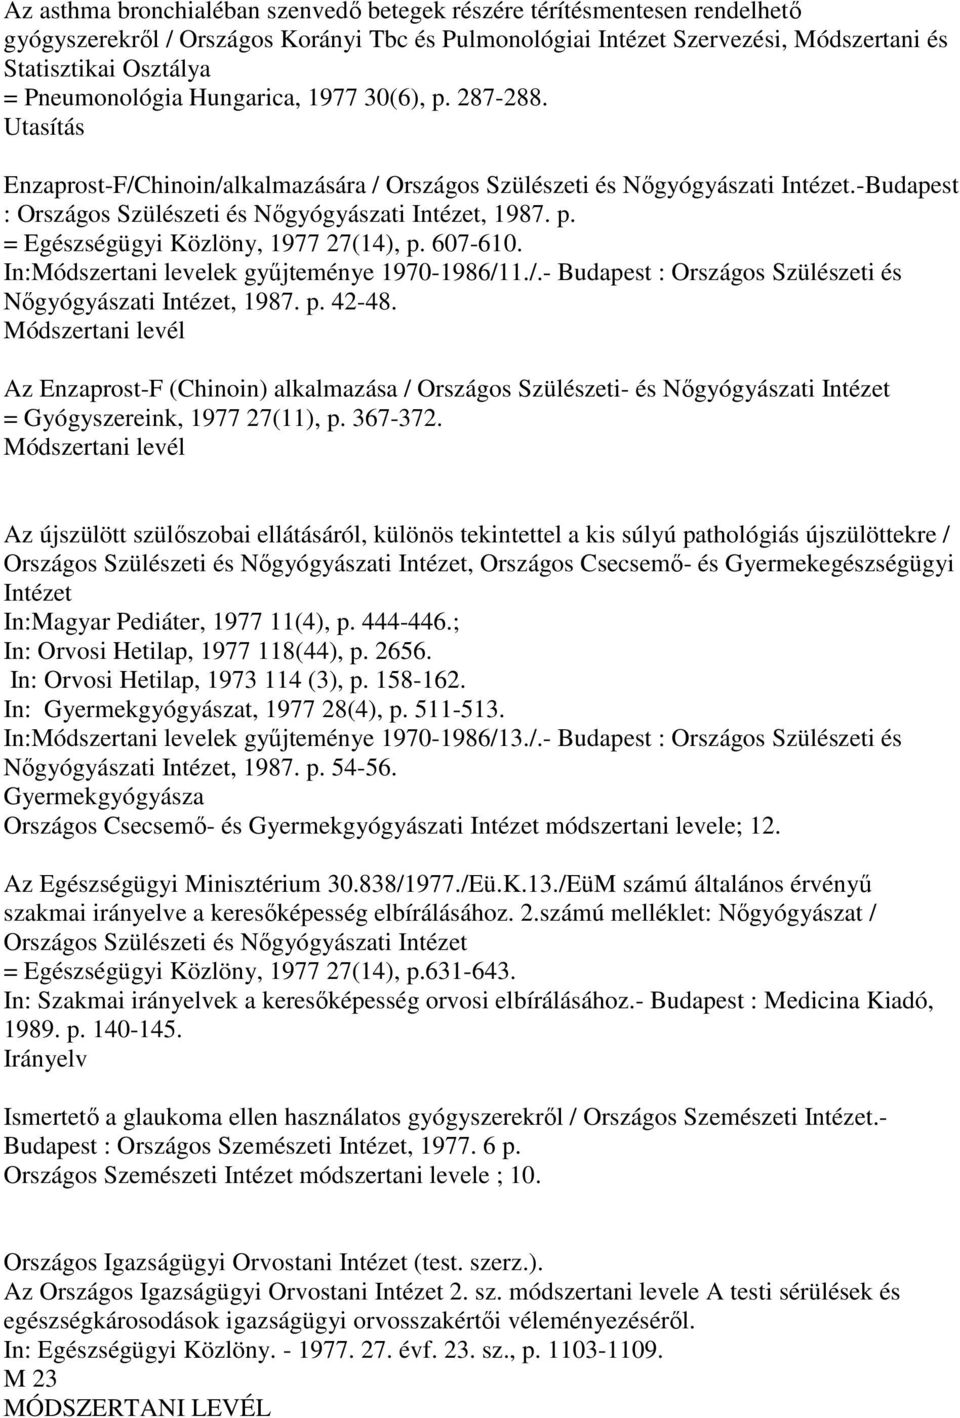 -Budapest : Országos Szülészeti és Nıgyógyászati Intézet, 1987. p. = Egészségügyi Közlöny, 1977 27(14), p. 607-610. In:Módszertani levelek győjteménye 1970-1986/1